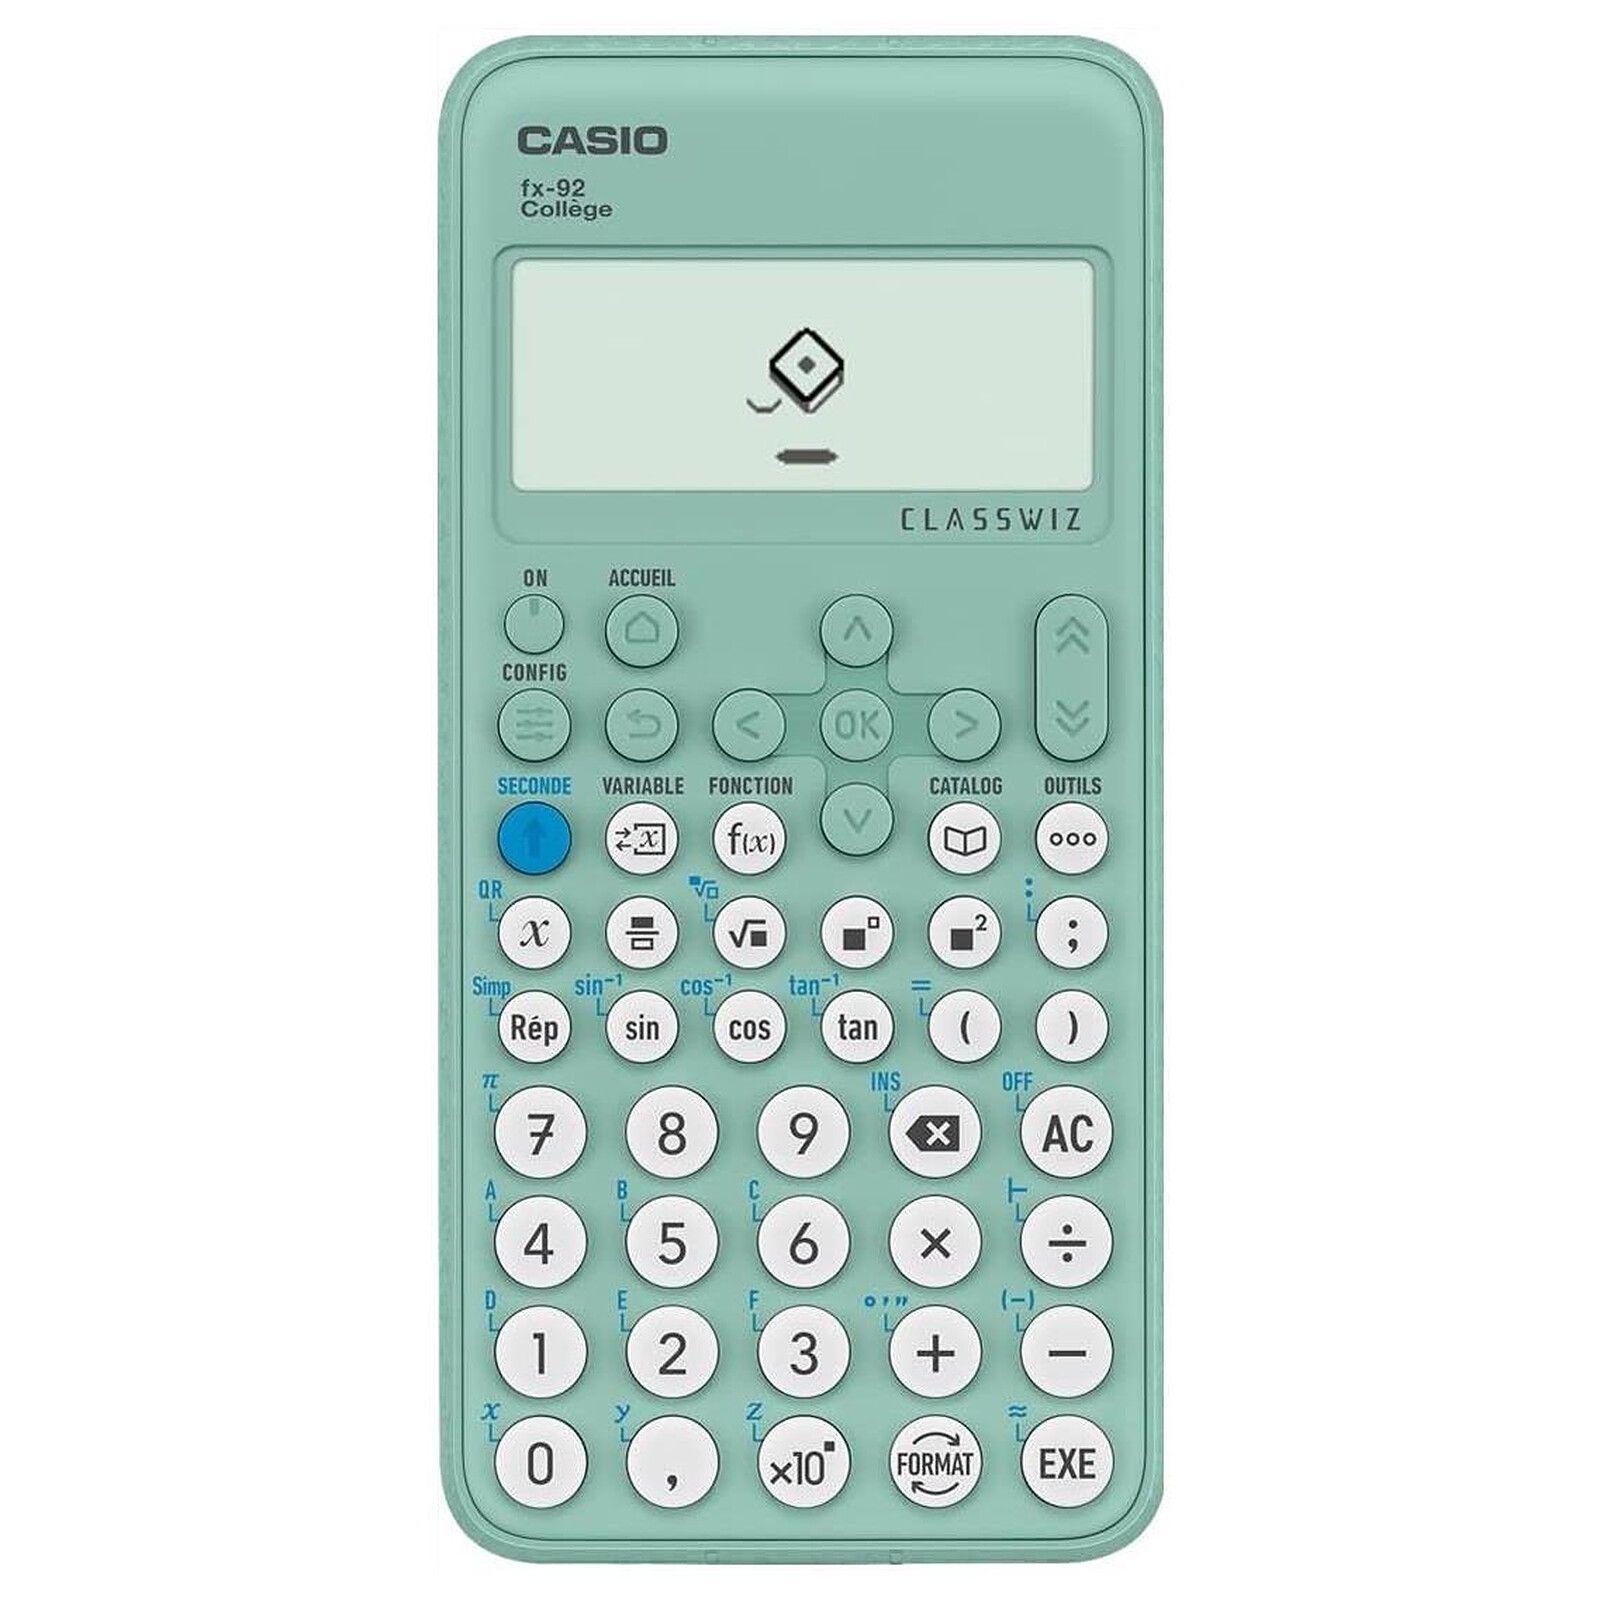 CASIO Calculatrice casio scientifique petite fx - Calculatrice - LDLC